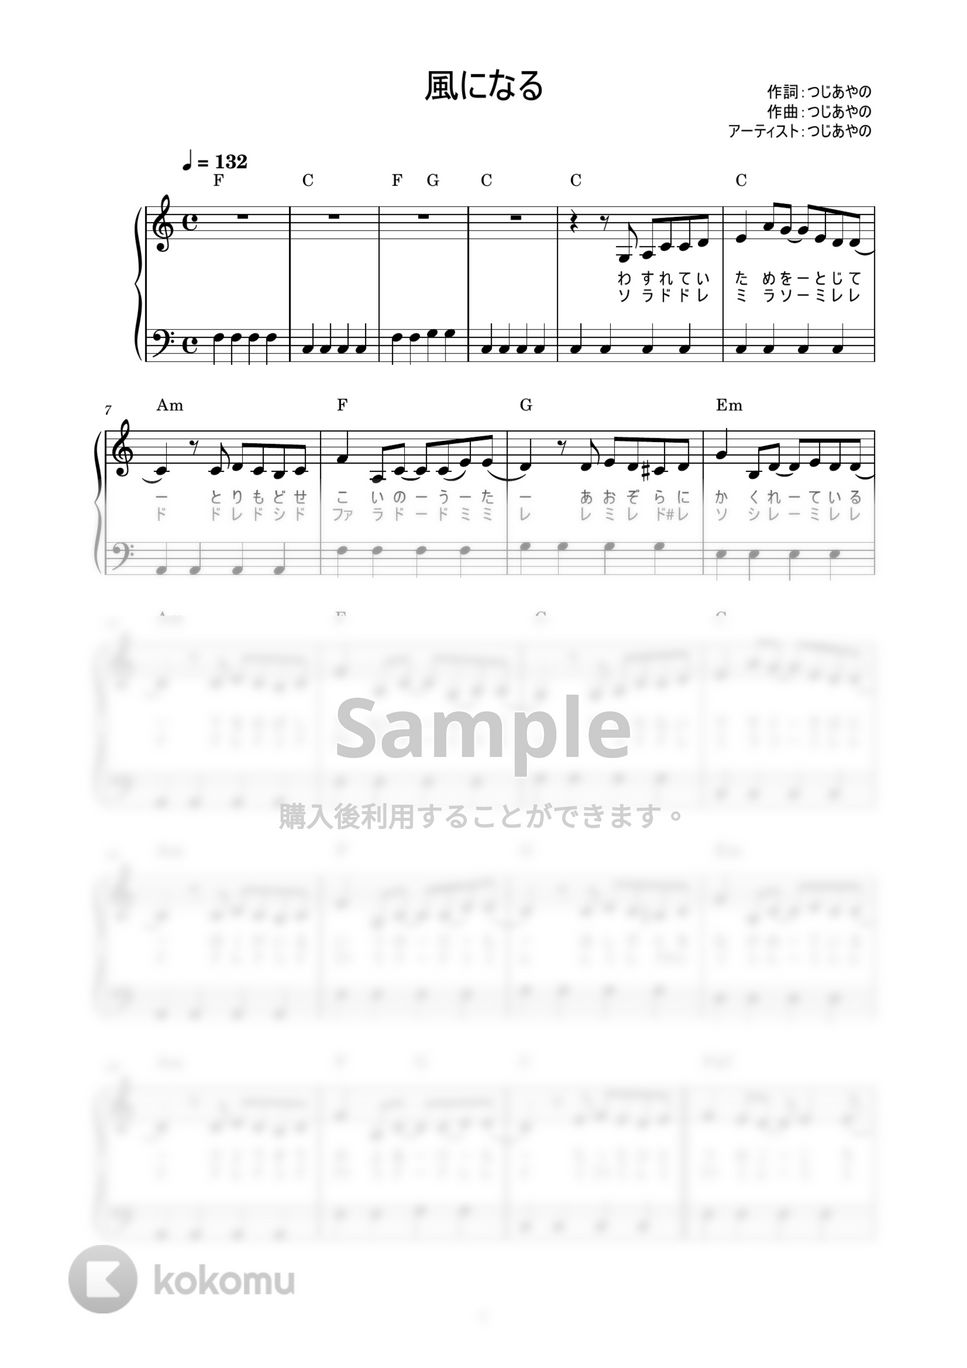 つじあやの - 風になる (かんたん / 歌詞付き / ドレミ付き / 初心者) by piano.tokyo